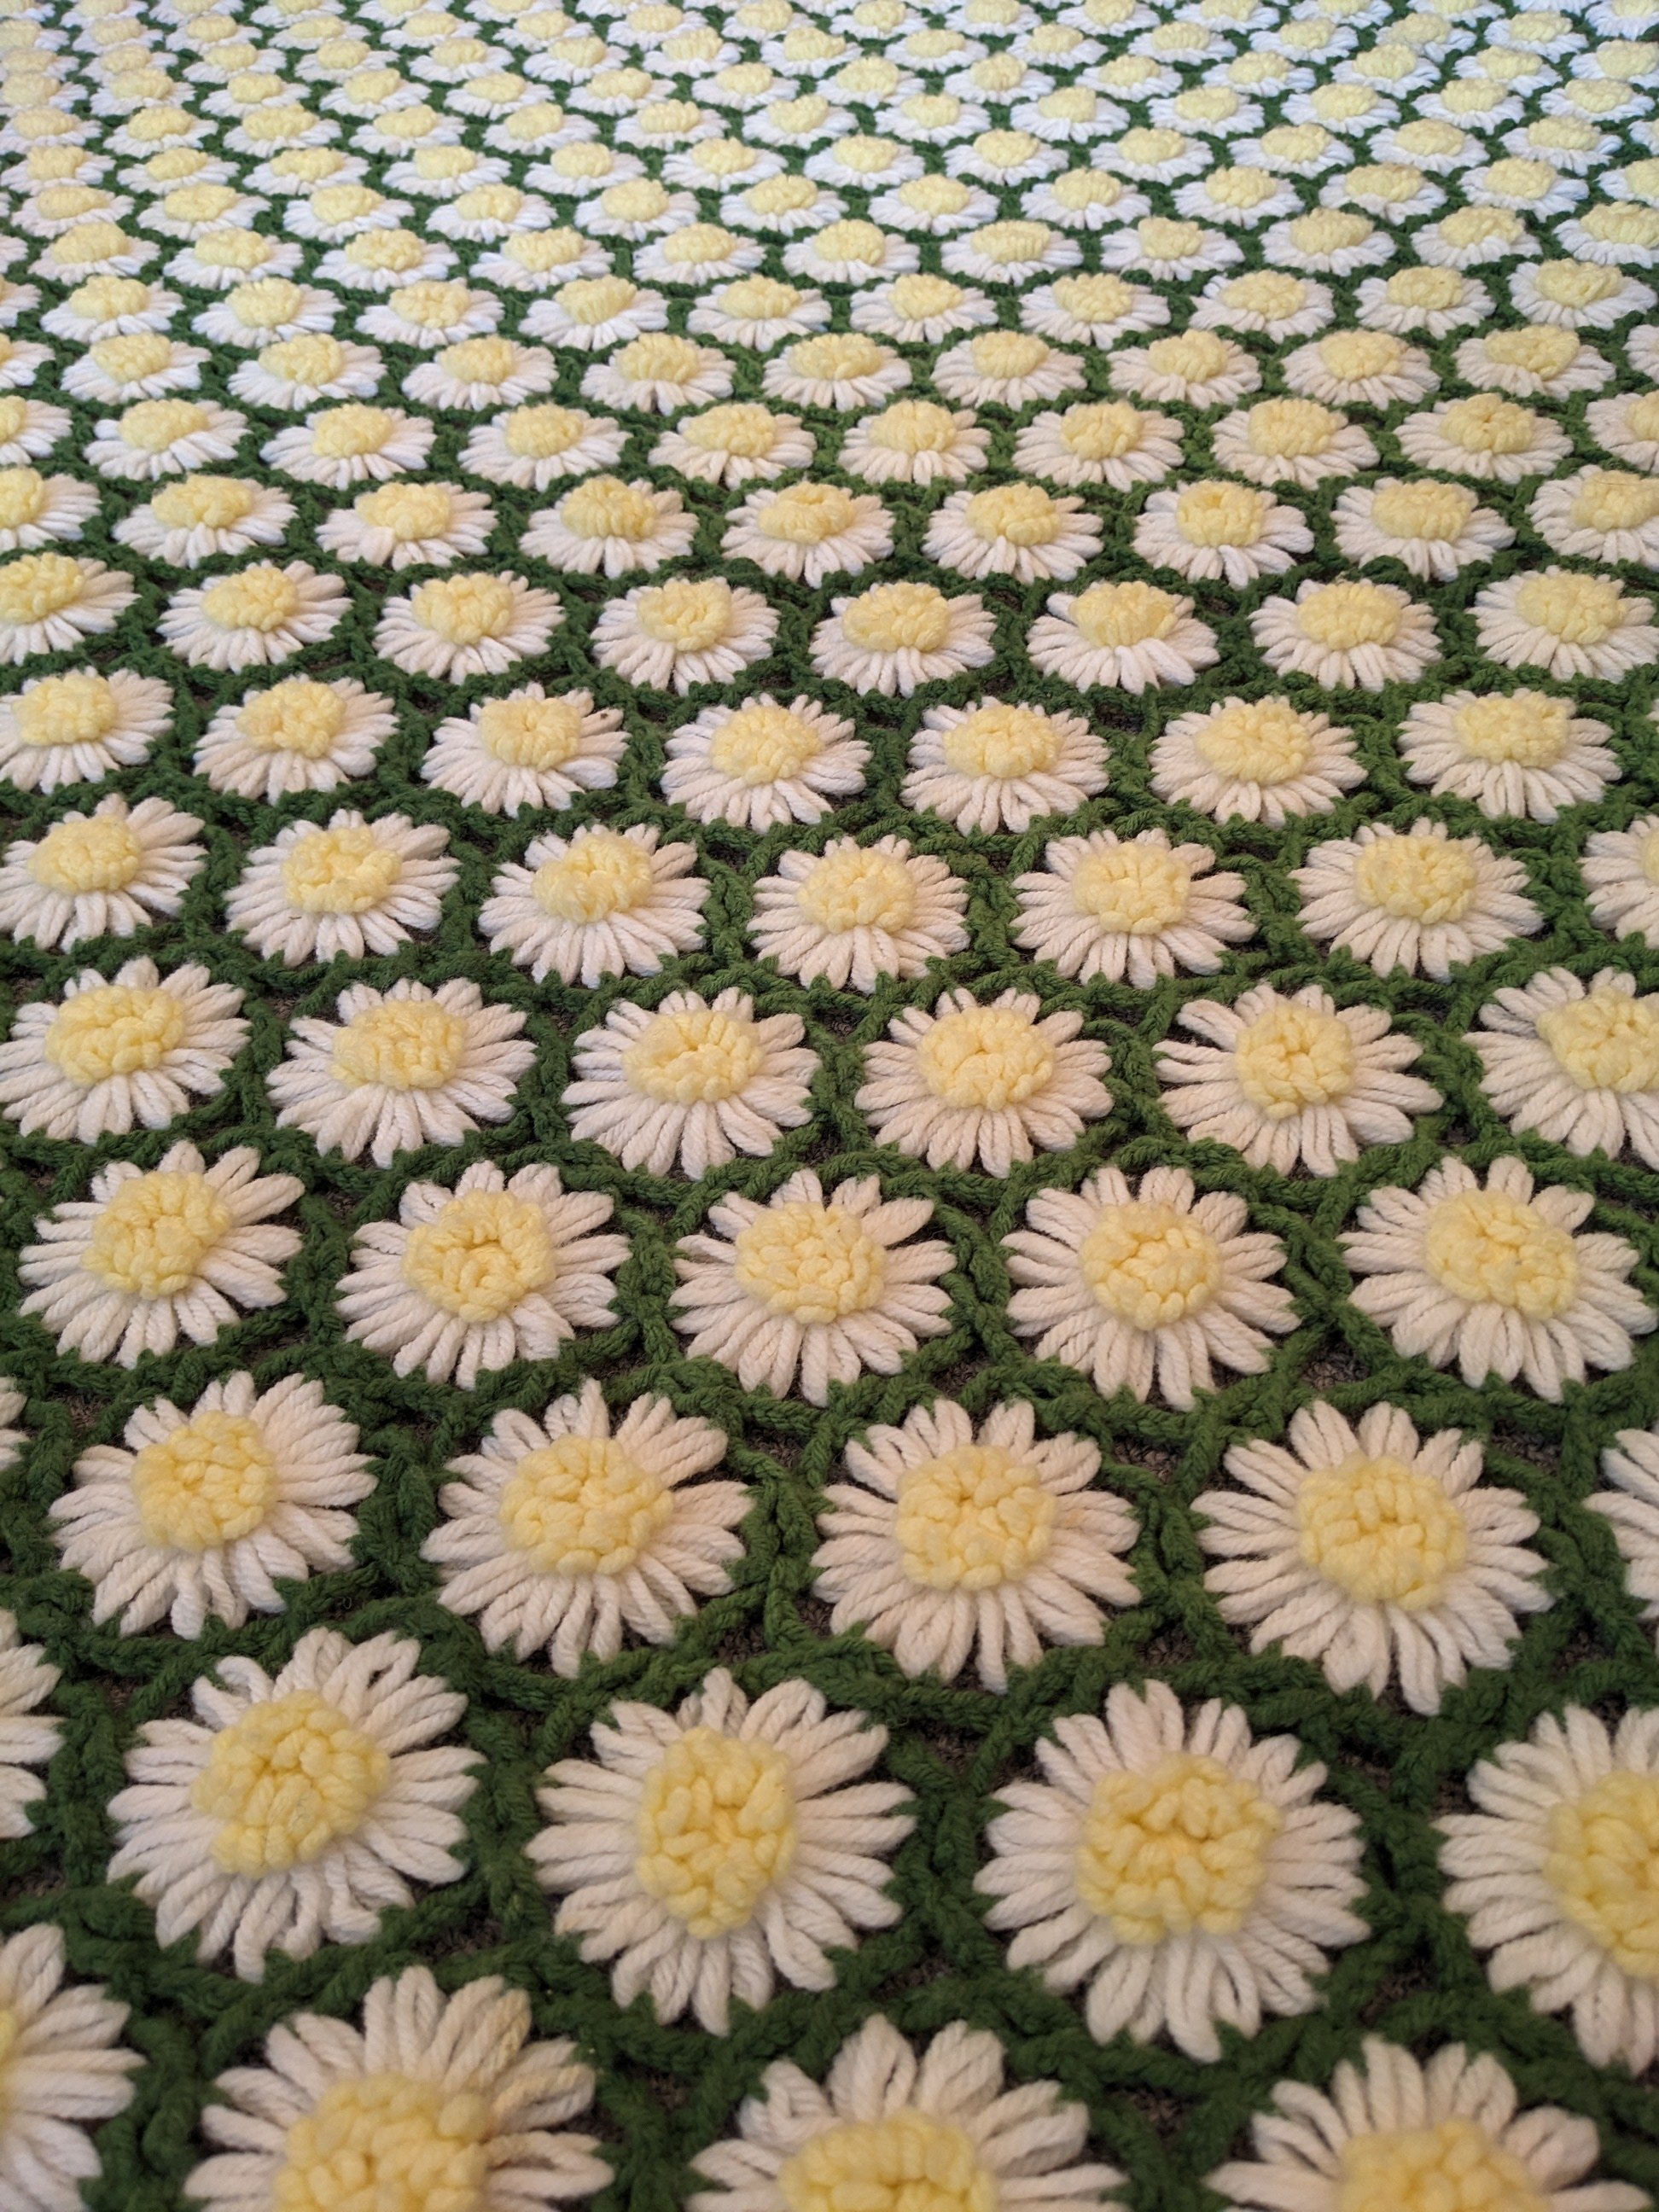 70s Crocheted Daisy Afghan